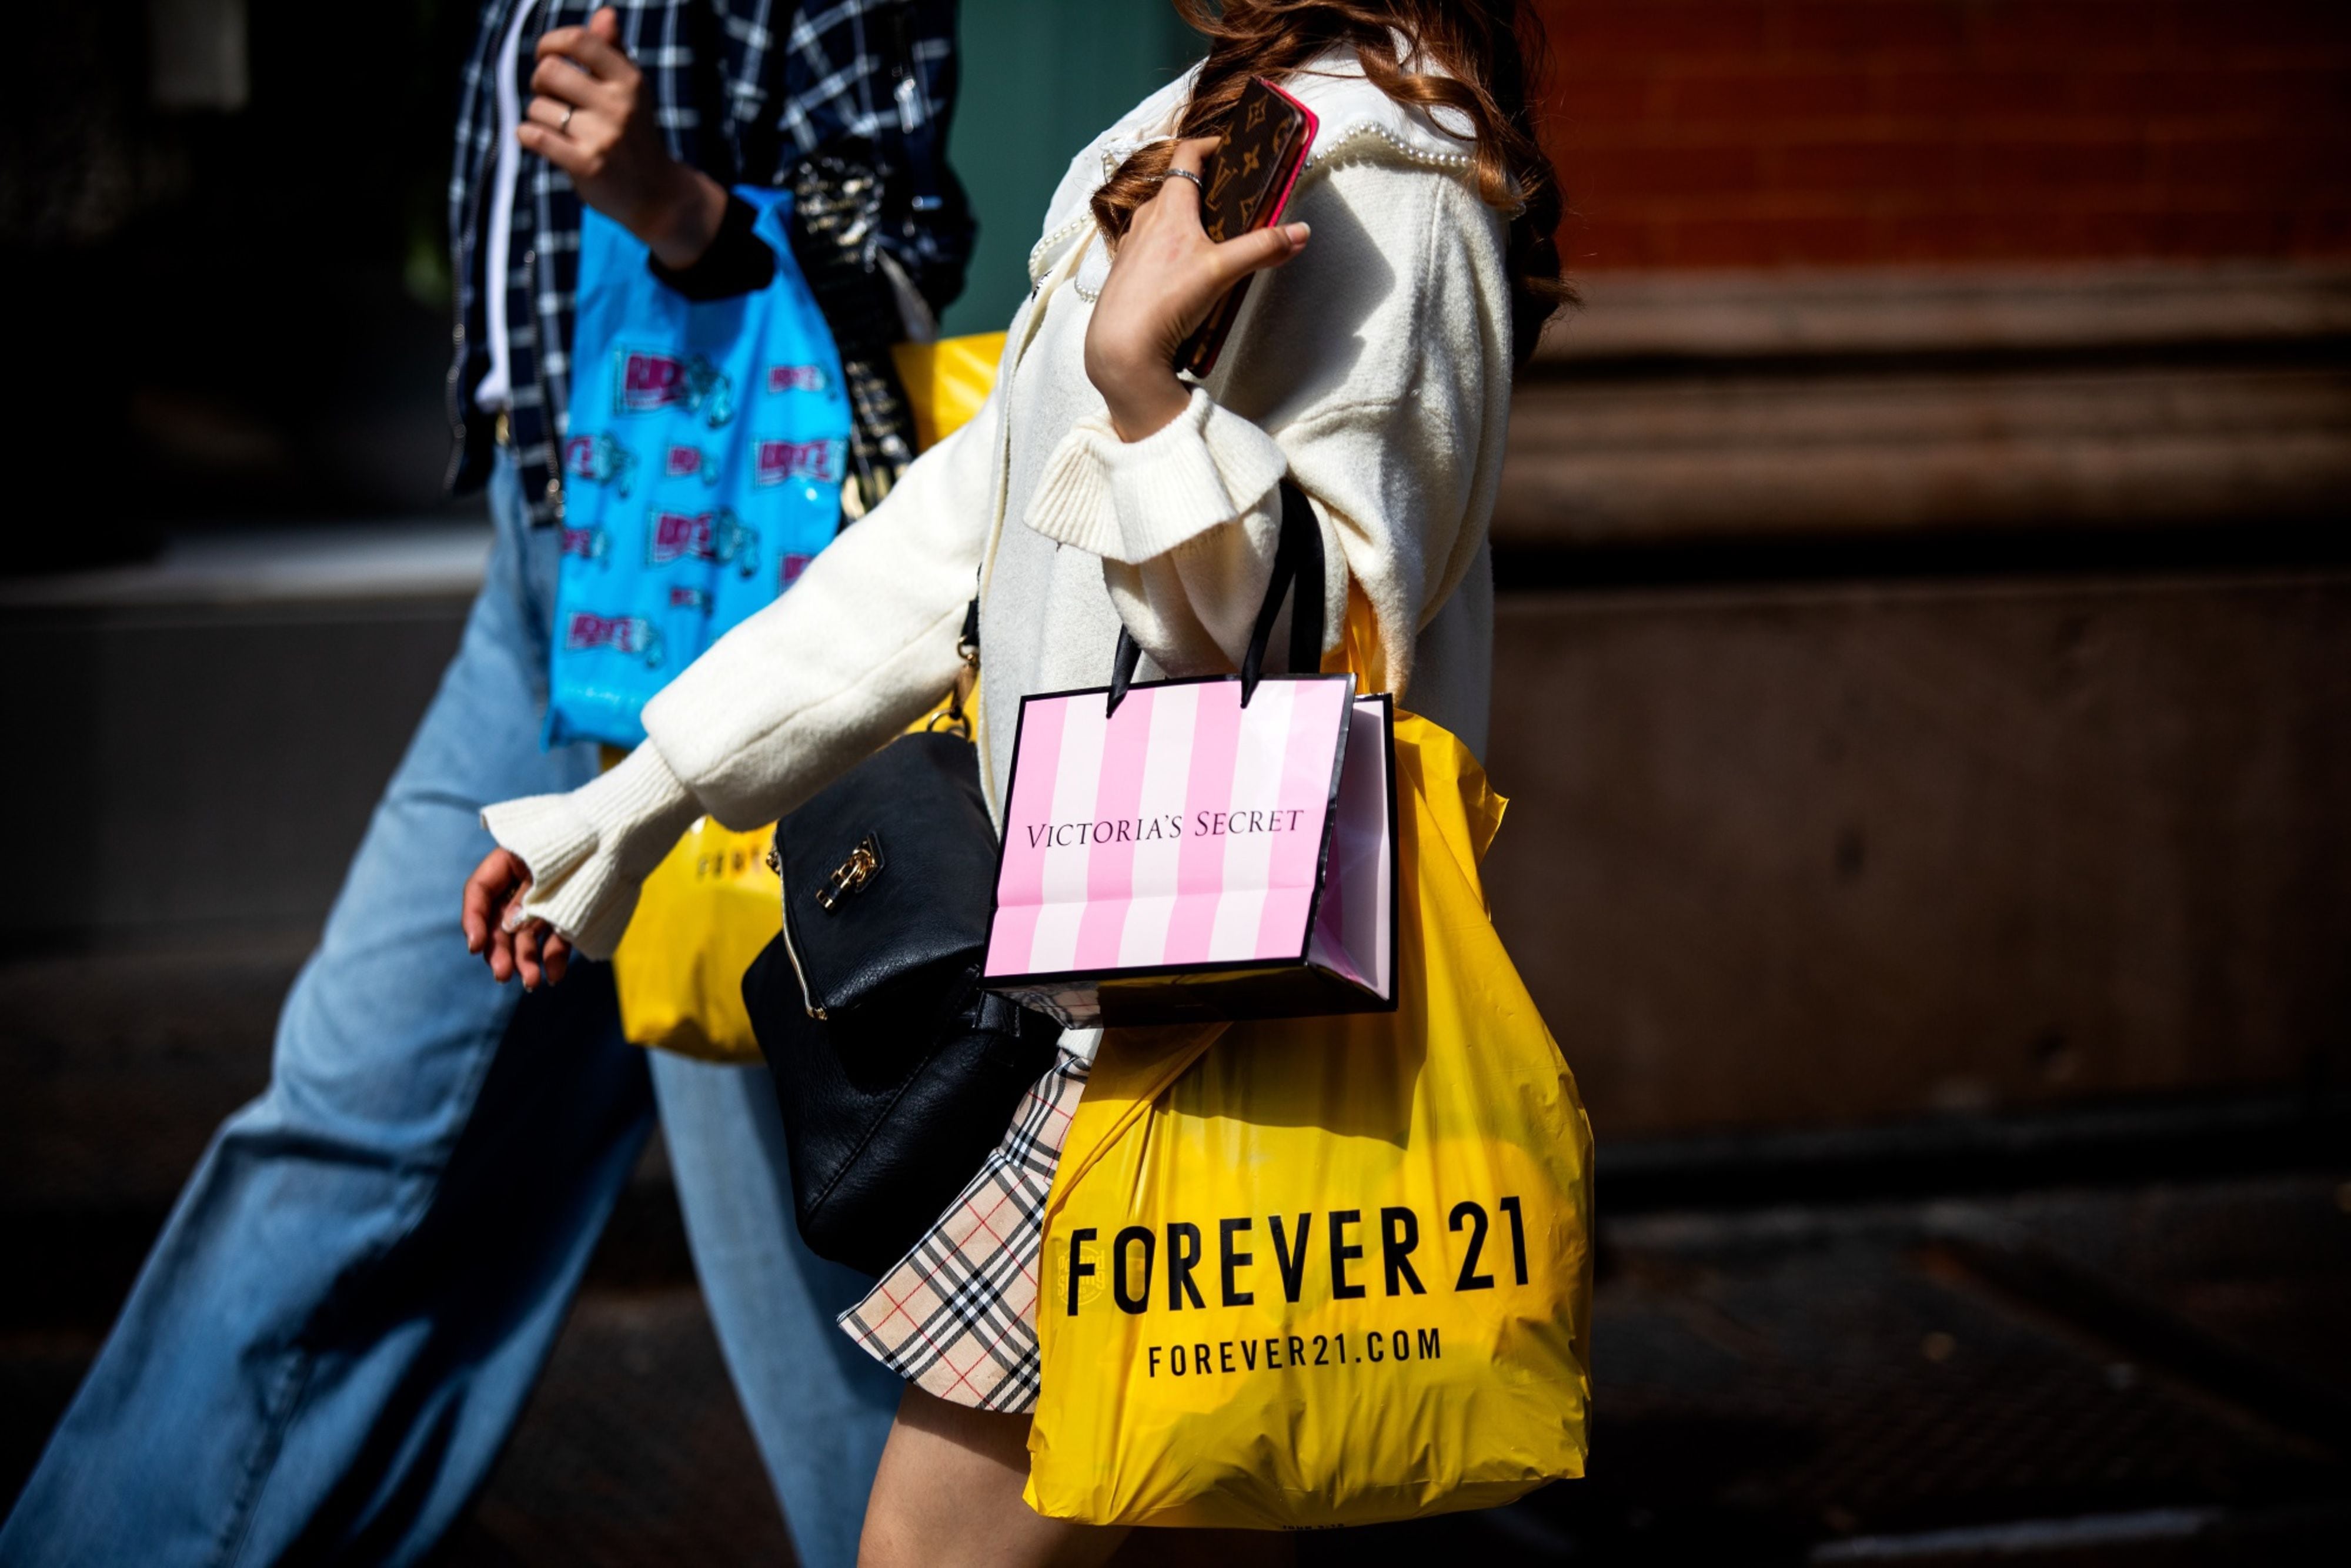 Forever 21 chega ao Brasil com primeira loja no Morumbi Shopping - Economia  - Estado de Minas